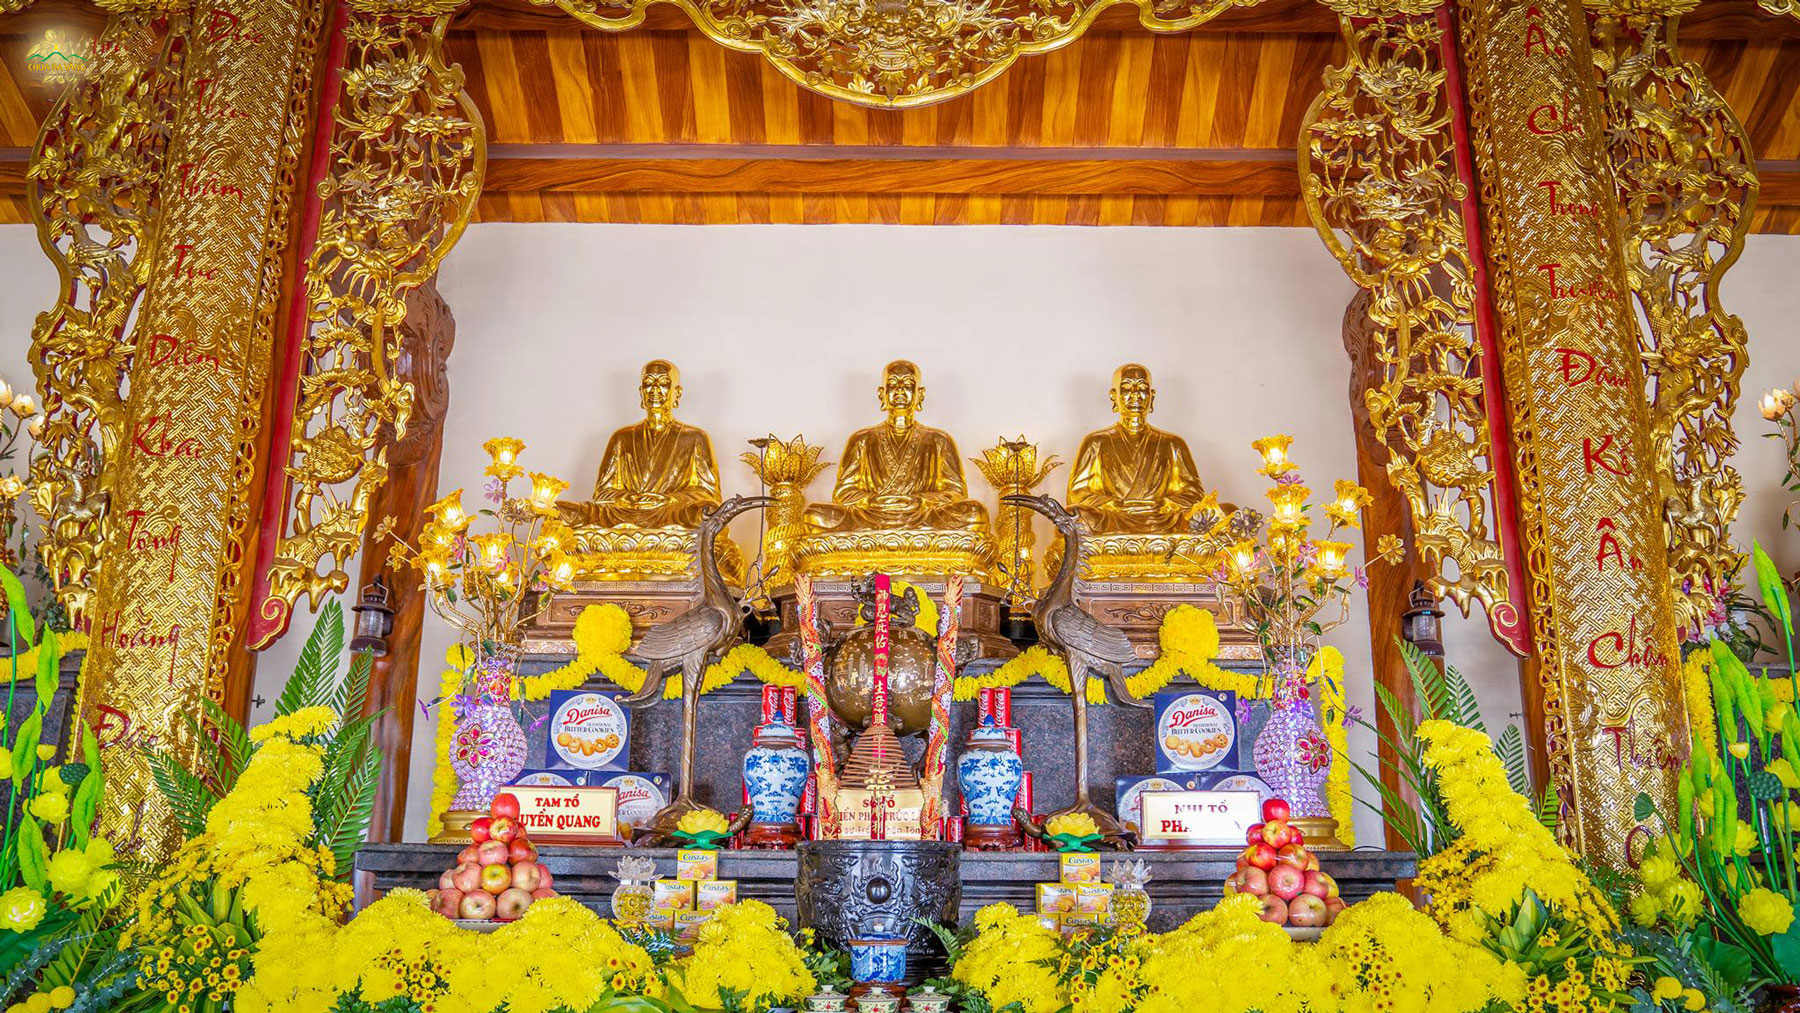 Tôn tượng Đệ tam Tổ Trúc Lâm: Sơ Tổ Phật hoàng Trần Nhân Tông (ở giữa), Nhị Tổ Pháp Loa (bên phải), Tam Tổ Huyền Quang (bên trái)  